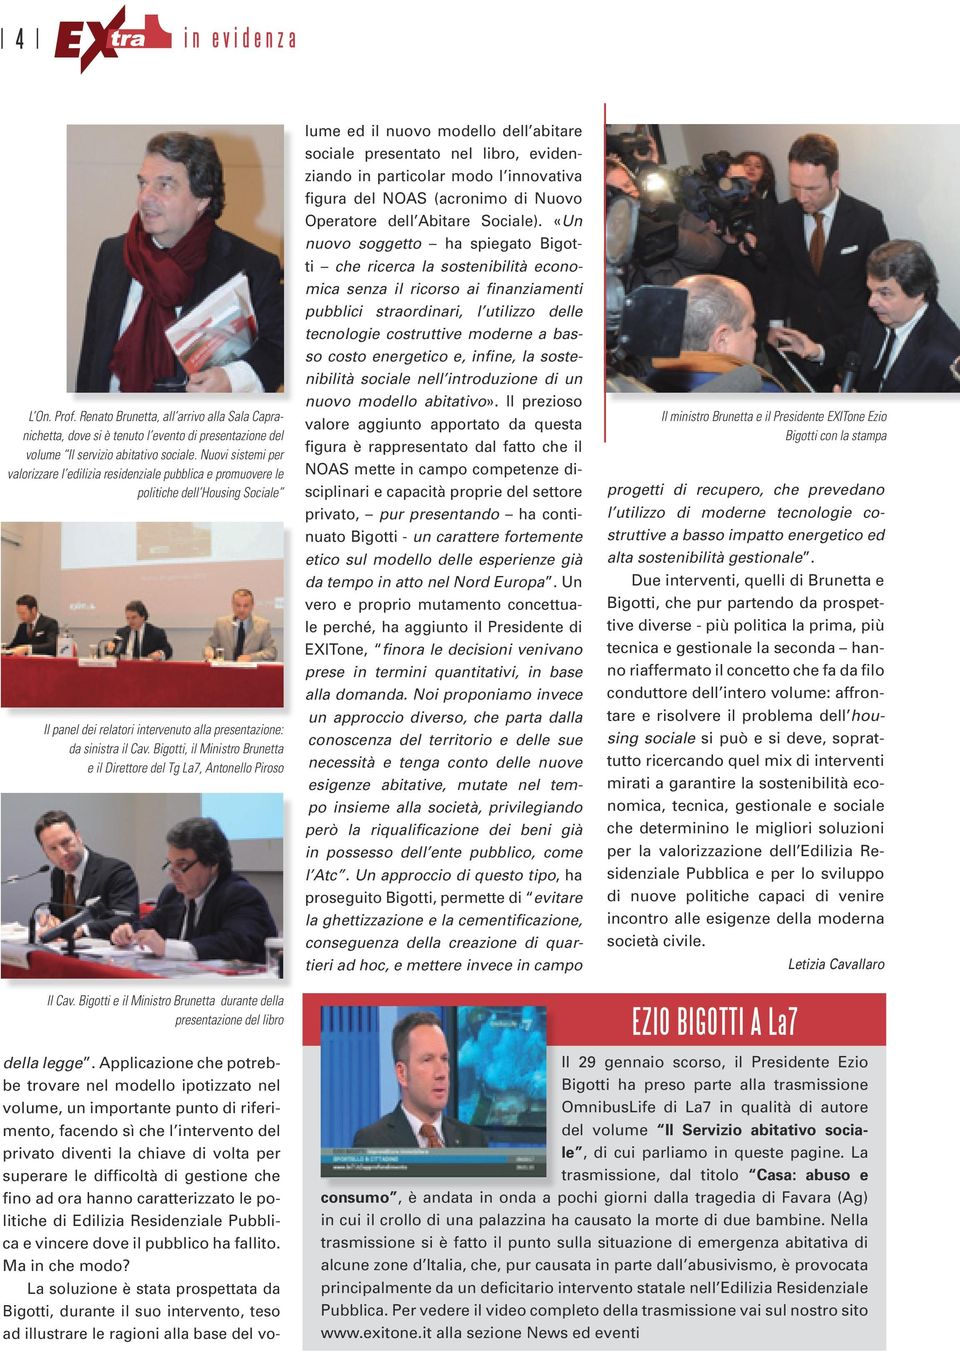 Bigotti, il Ministro Brunetta e il Direttore del Tg La7, Antonello Piroso della legge.